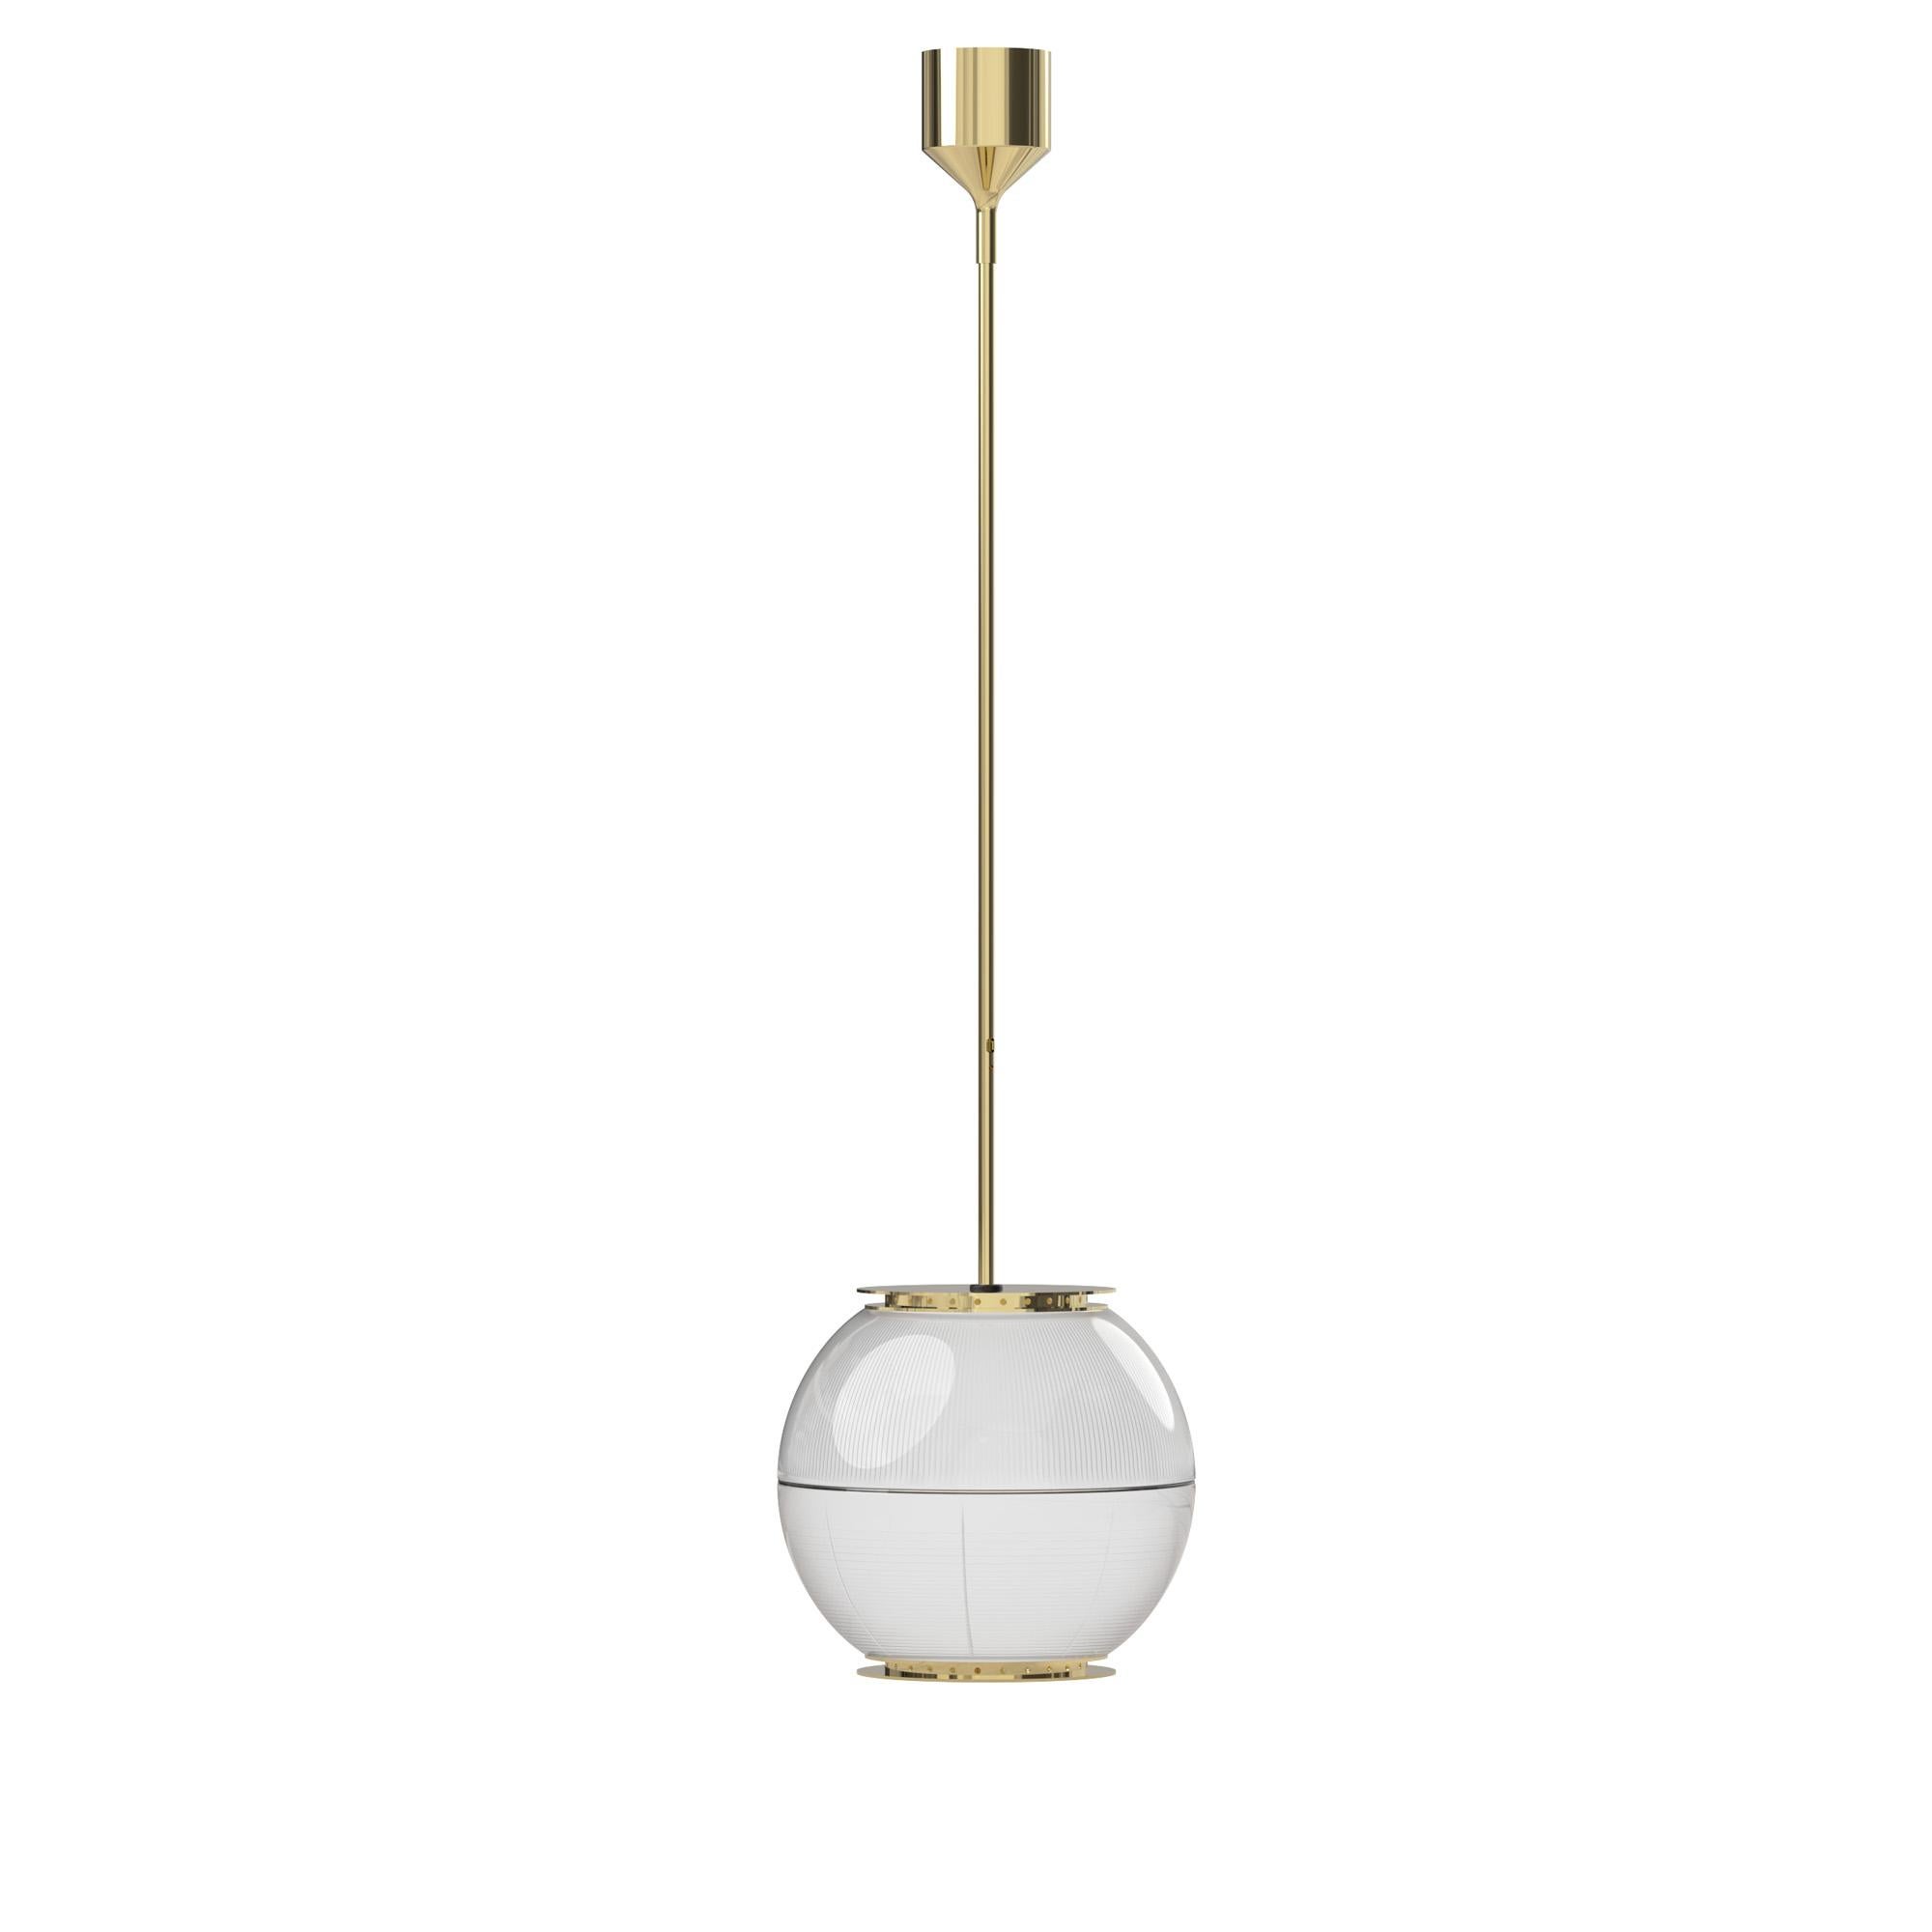 Contemporary Ignazio Gardella 'Doppio Vetro' Pendant Lamp in Chrome and Glass for Tato Italia For Sale